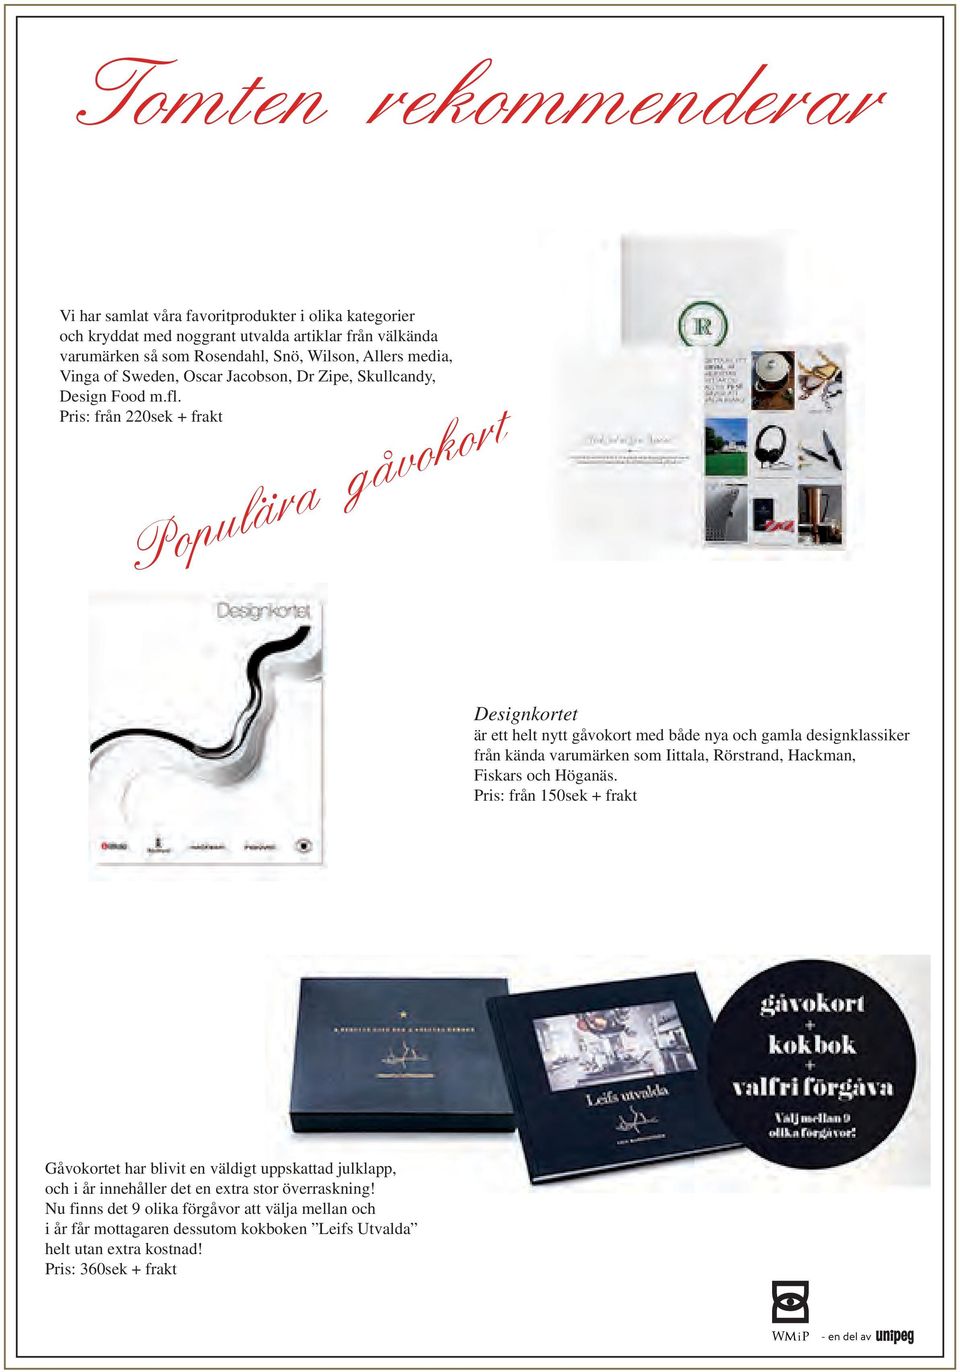 Pris: från 220sek + frakt Populära gåvokort Designkortet är ett helt nytt gåvokort med både nya och gamla designklassiker från kända varumärken som Iittala, Rörstrand,